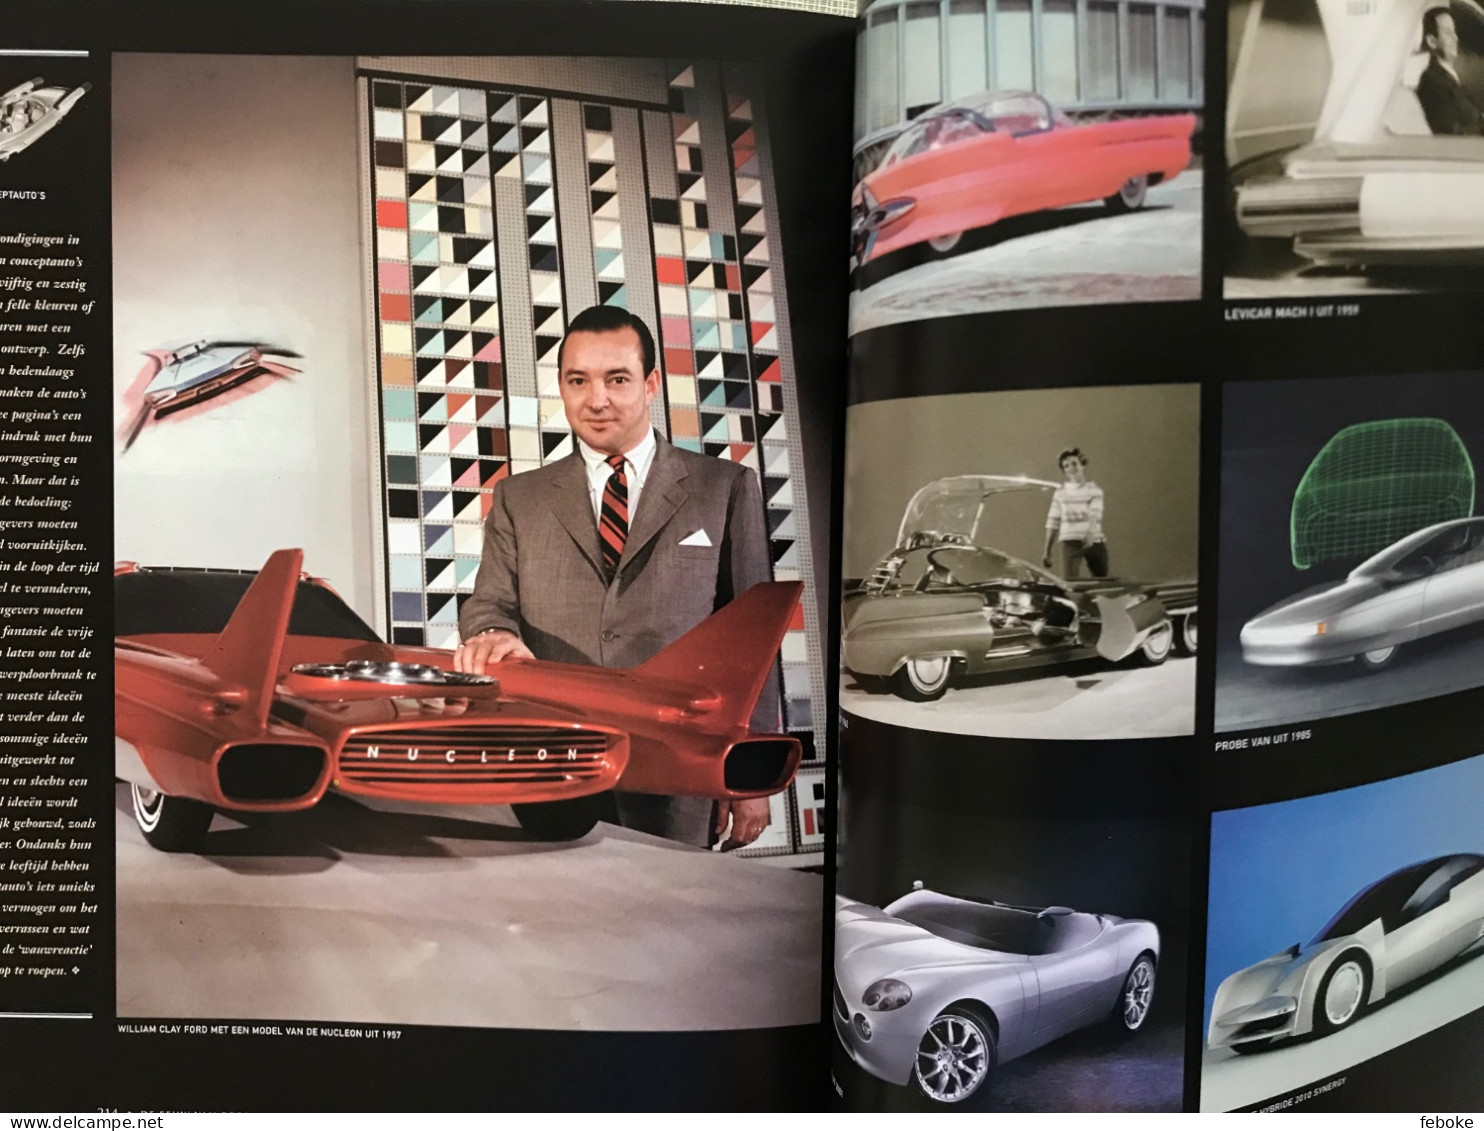 FORD GENK 1964-2014 + DE EEUW VAN FORD FORD MOTOR COMPANY 100 YEARS - AUTOINDUSTRIE FORD FOTOBOEKEN GESCHIEDENIS